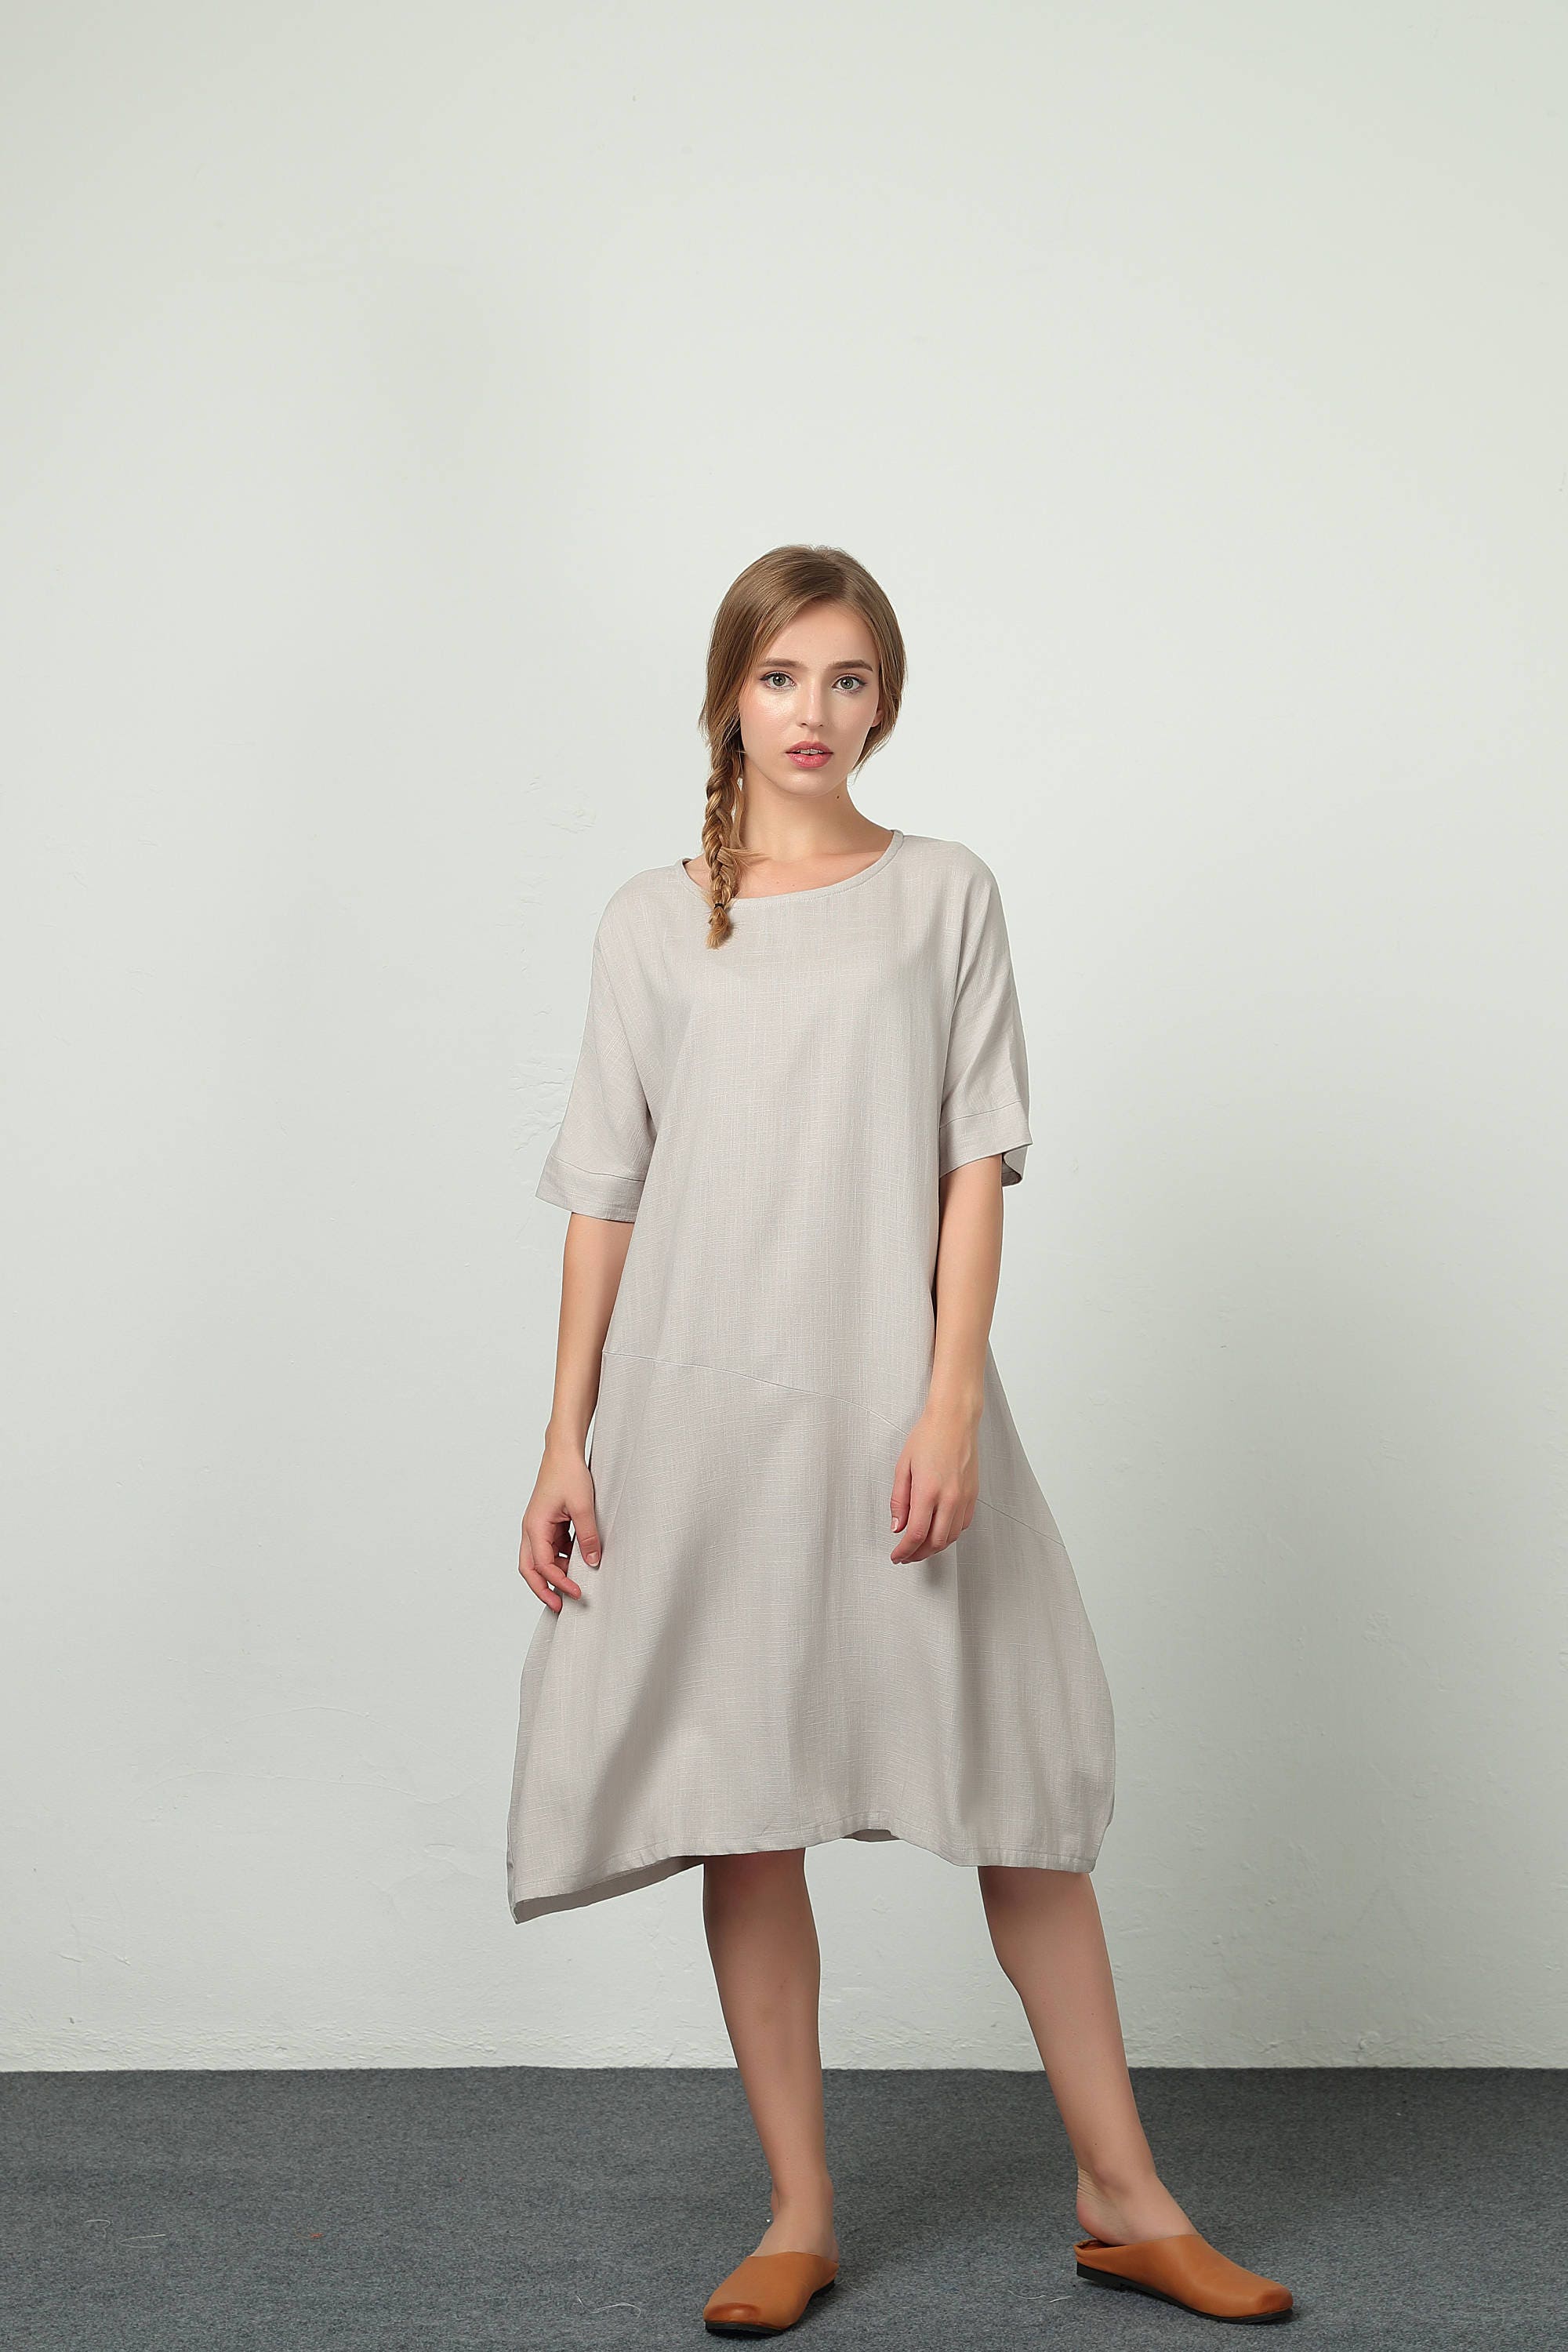 Women's linen dress Short Sleeves Summer Midi Dresses | Etsy